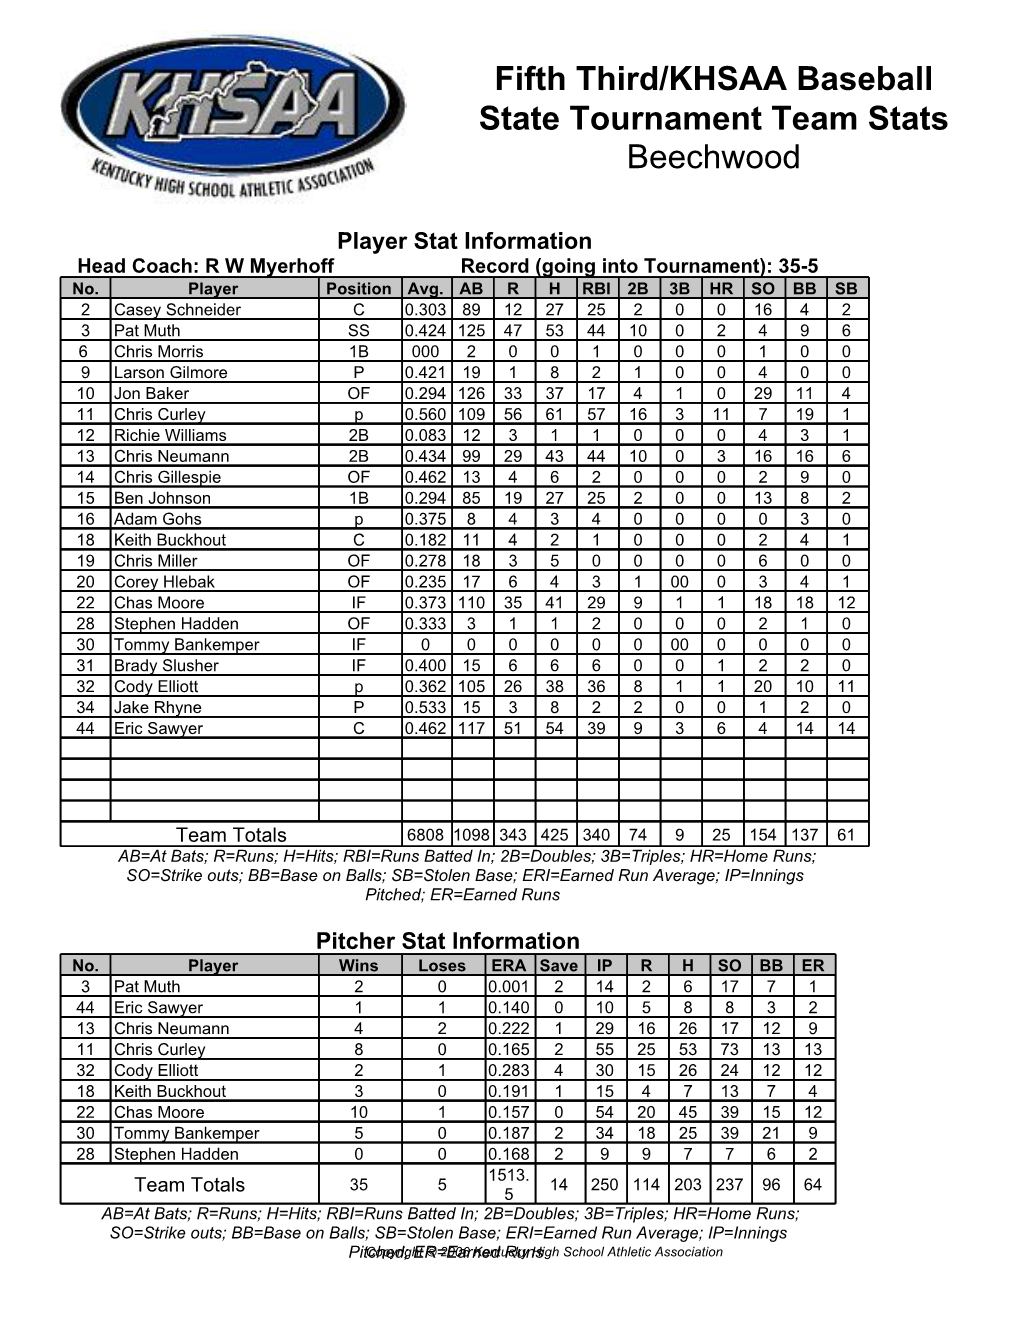 Fifth Third/KHSAA Baseball State Tournament Team Stats Beechwood